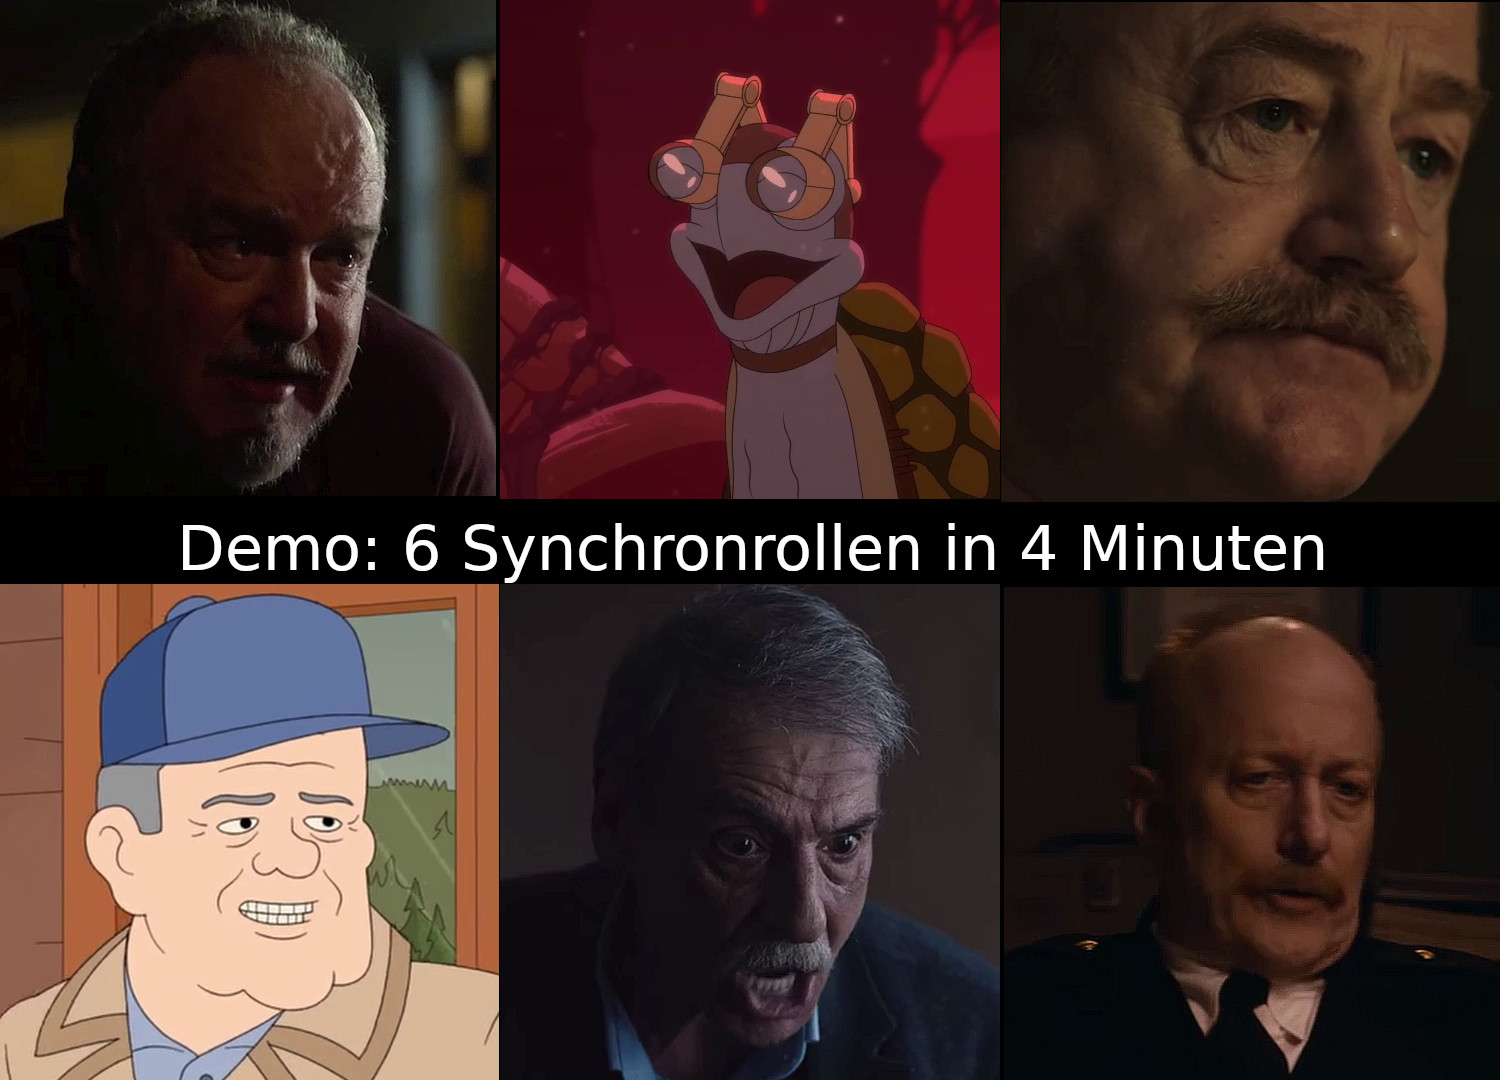 Das Bild zur Synchron-Demo: 6 Rollen in 4 Minuten